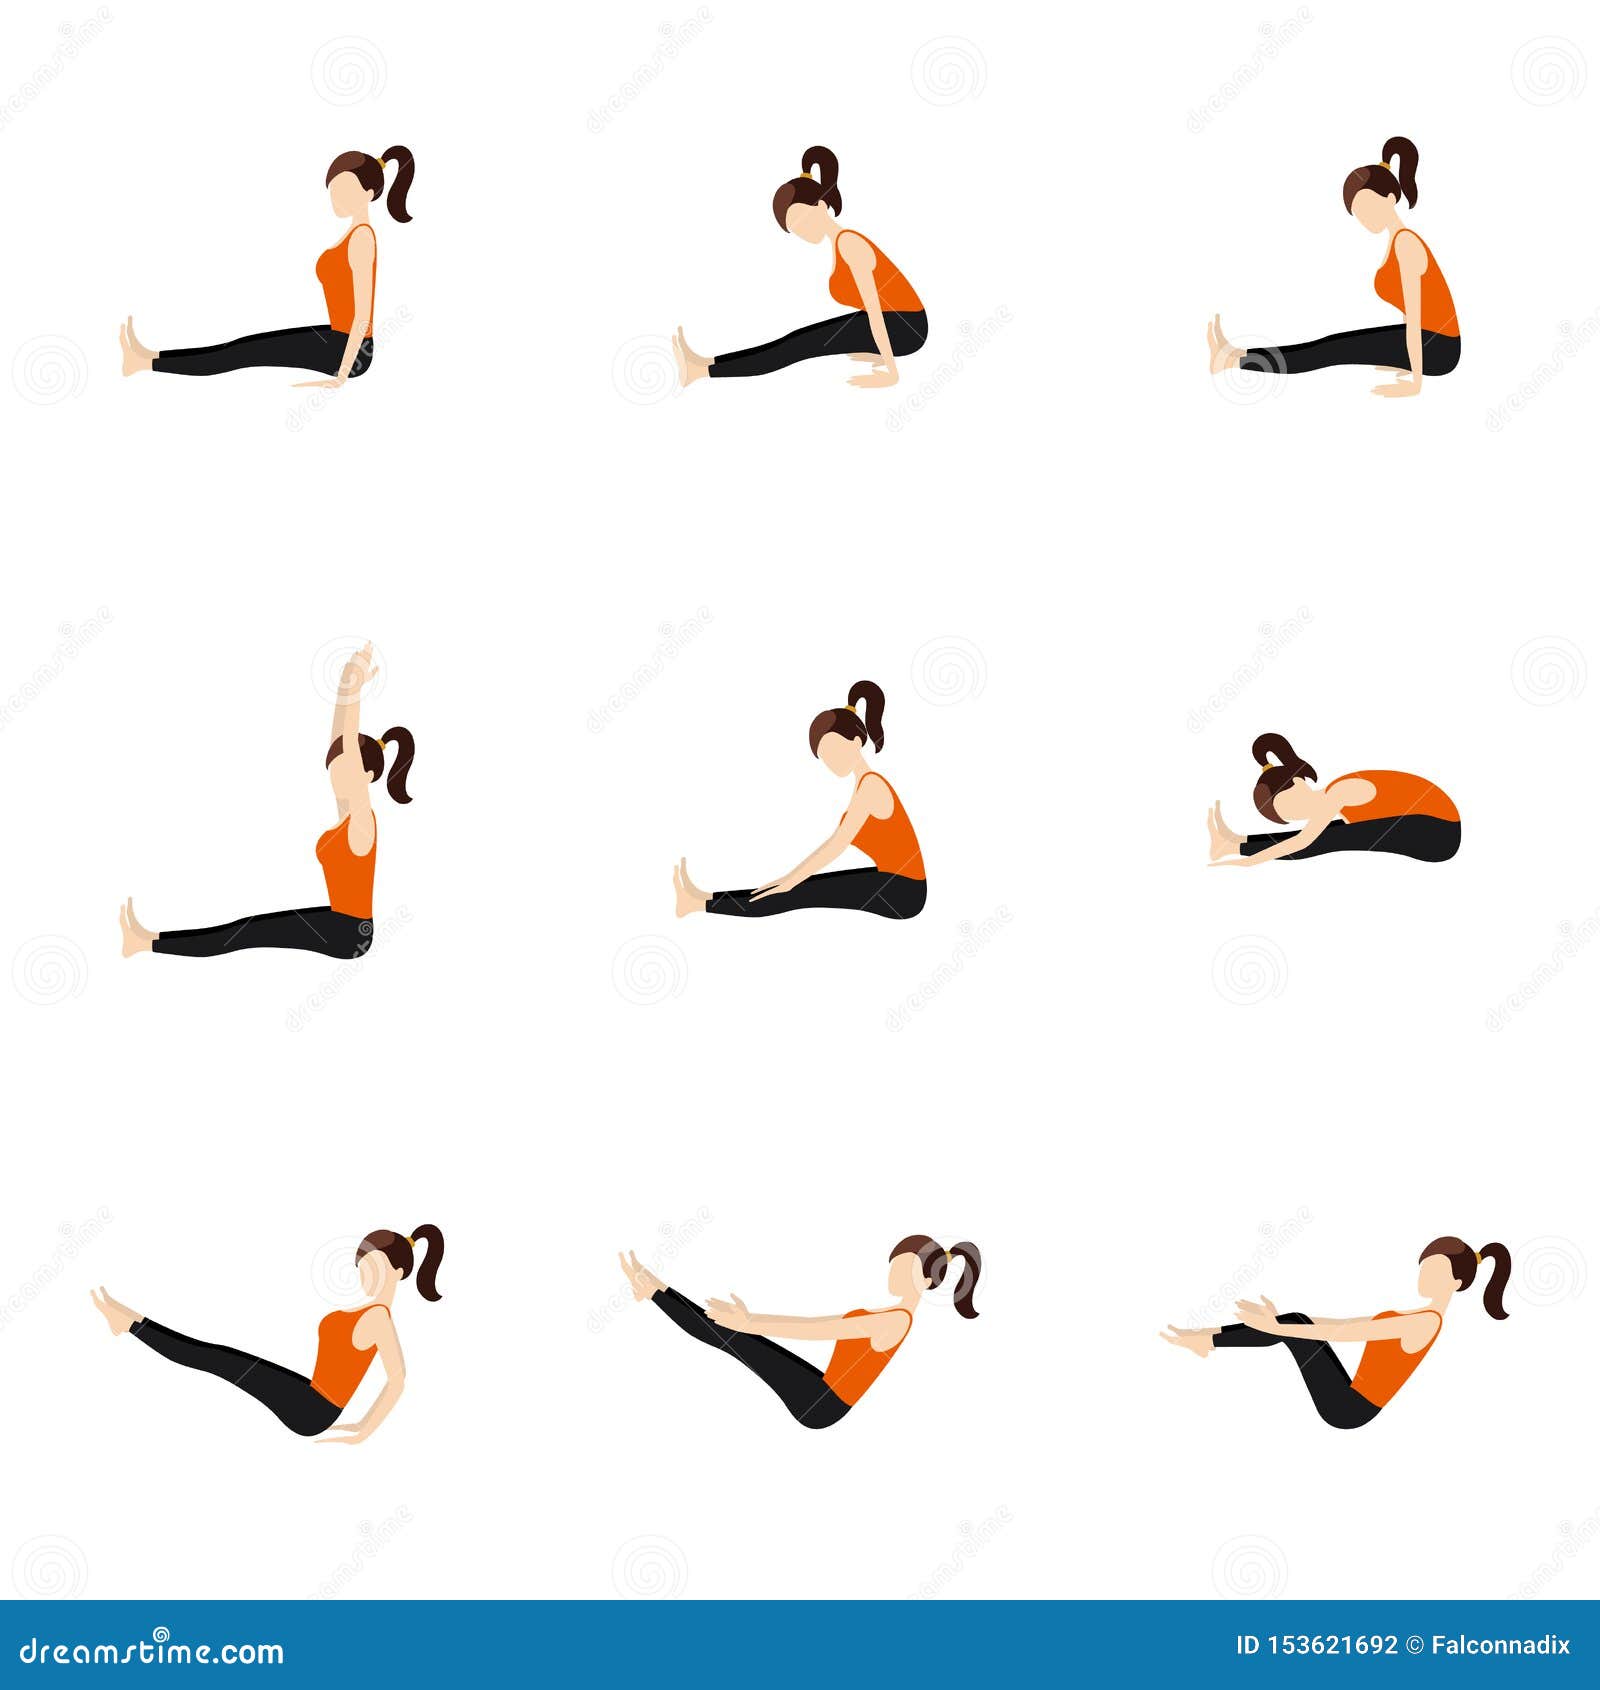 Seated Yoga Poses • Yoga Basics: Yoga Poses, Meditation, History,  Philosophy & More